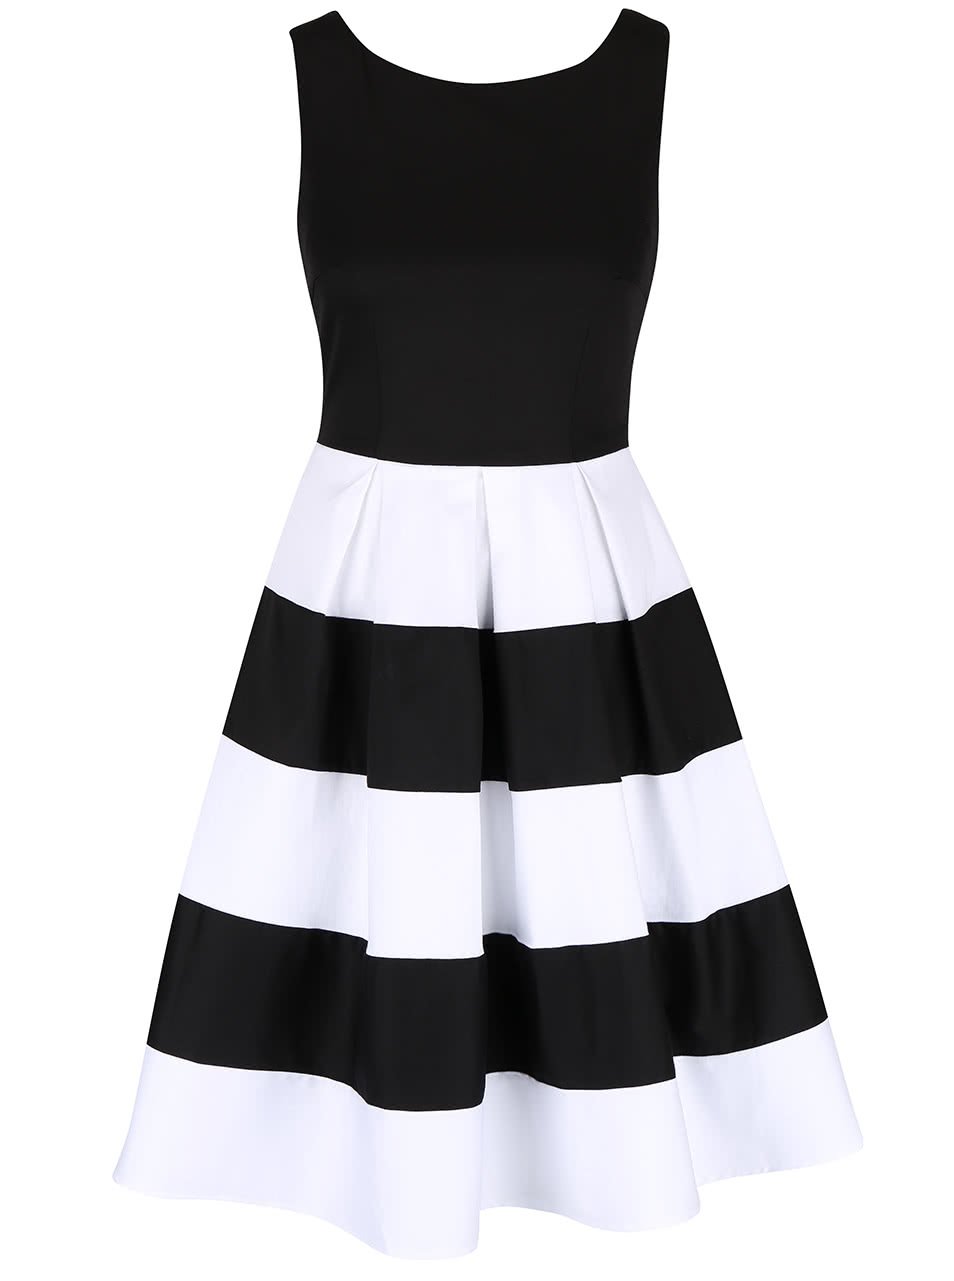 Černo-bílé šaty s pruhovanou sukní Dolly & Dotty Anna